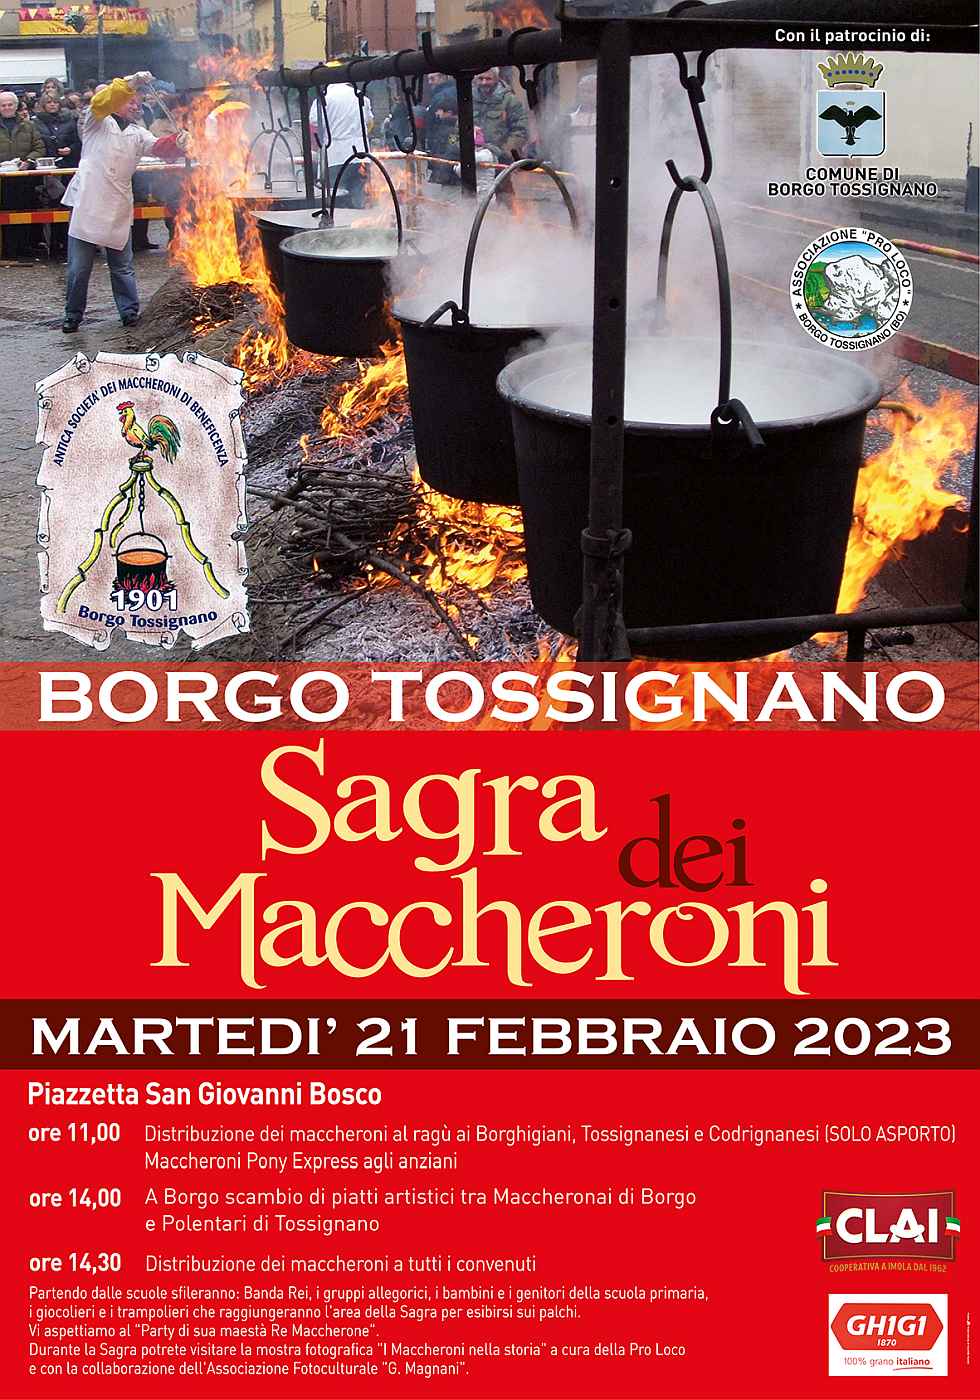 Borgo Tossignano (BO)
"Sagra dei Maccheroni e Festa della Polenta"
21 Febbraio 2023